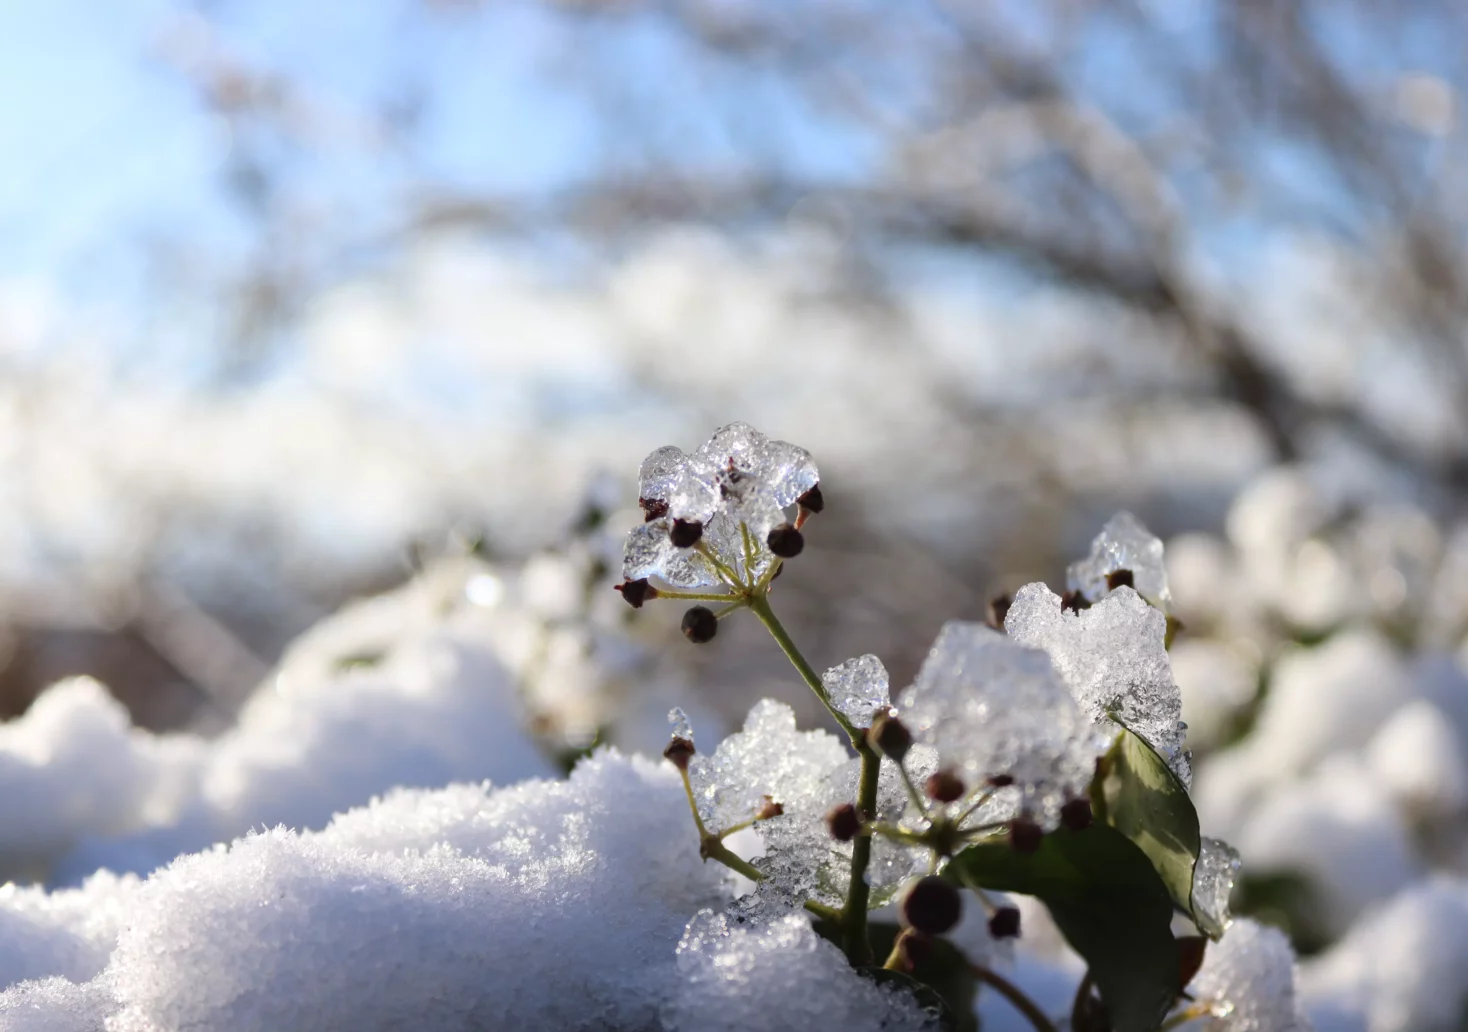 Ein Bild auf 5min.at zeigt eine Pflanze, die mit Eis überzogen ist. Rundeherum liegt Schnee.